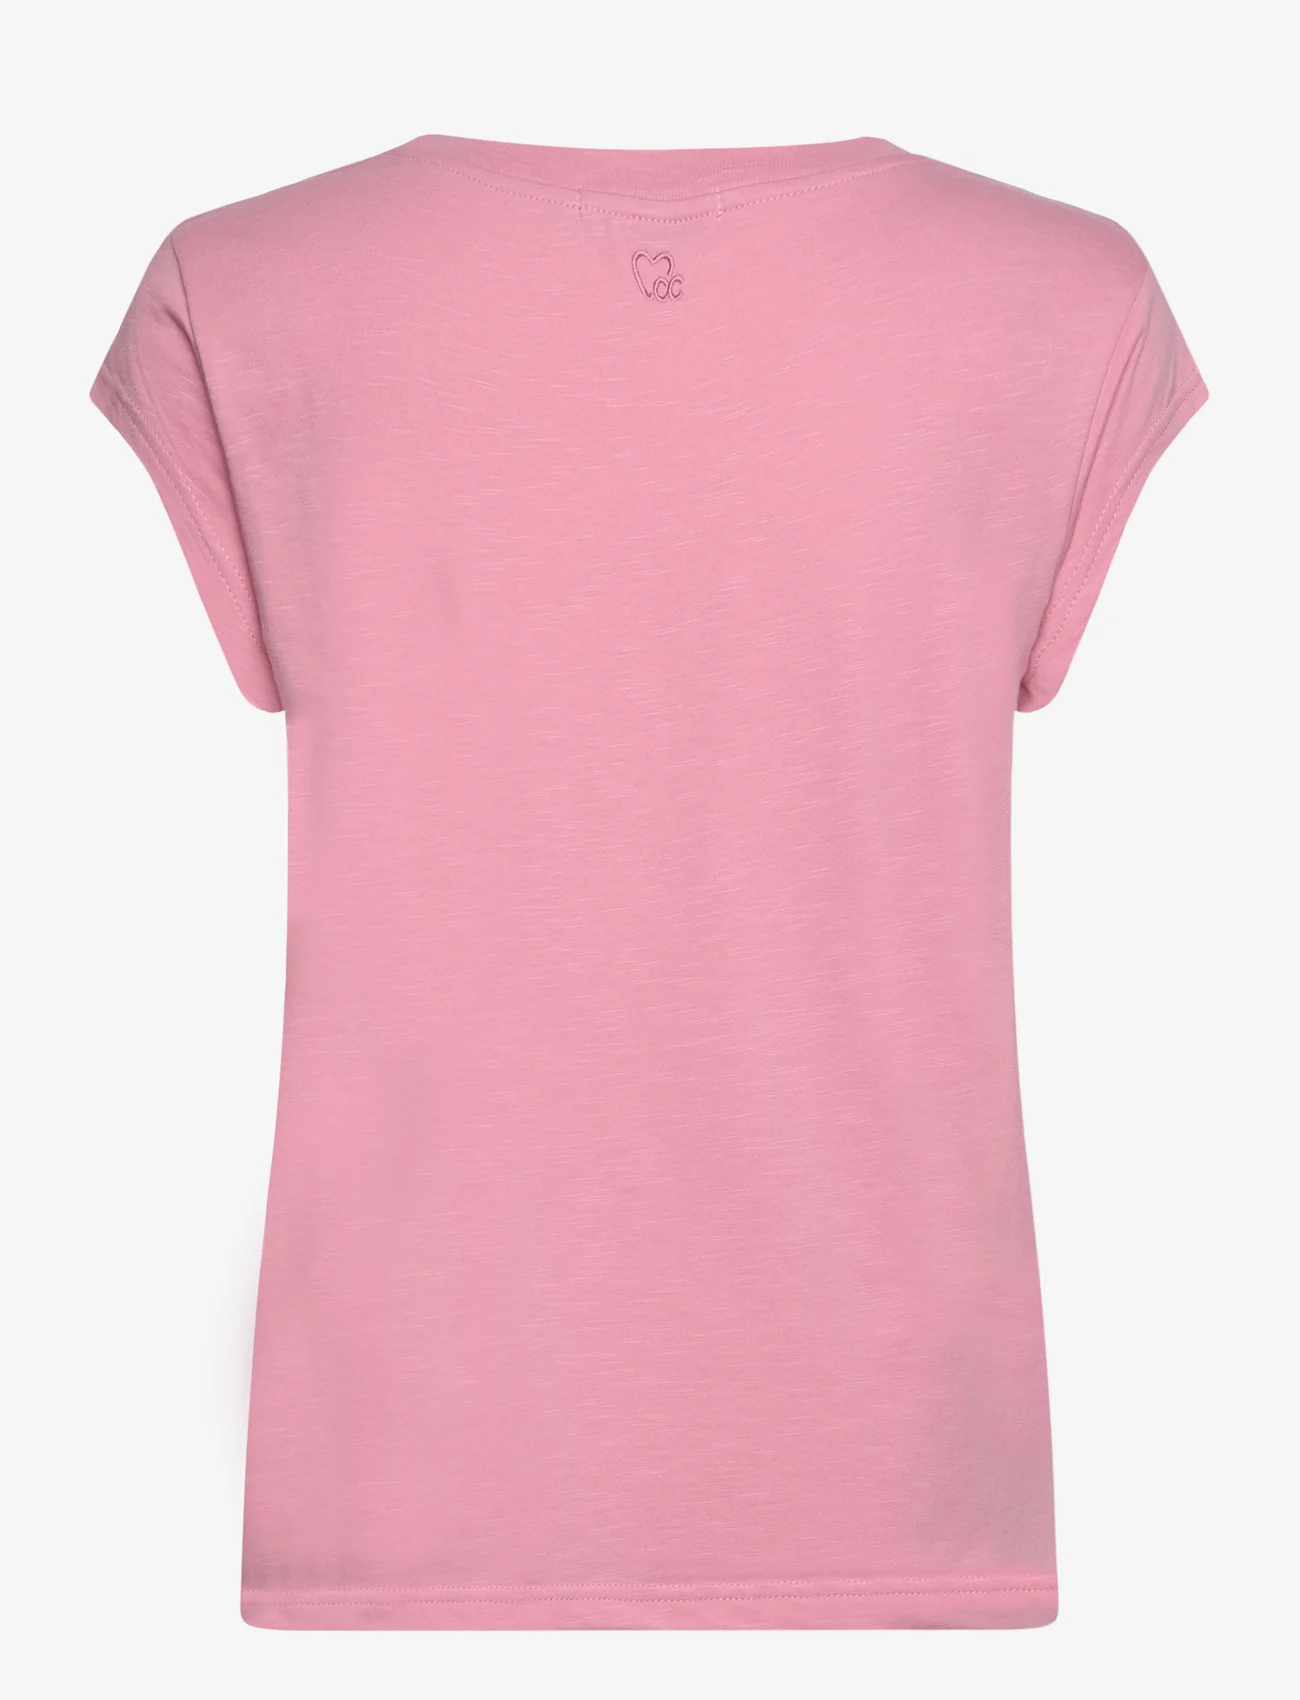 Coster Copenhagen - CC Heart basic t-shirt - die niedrigsten preise - dust pink - 1